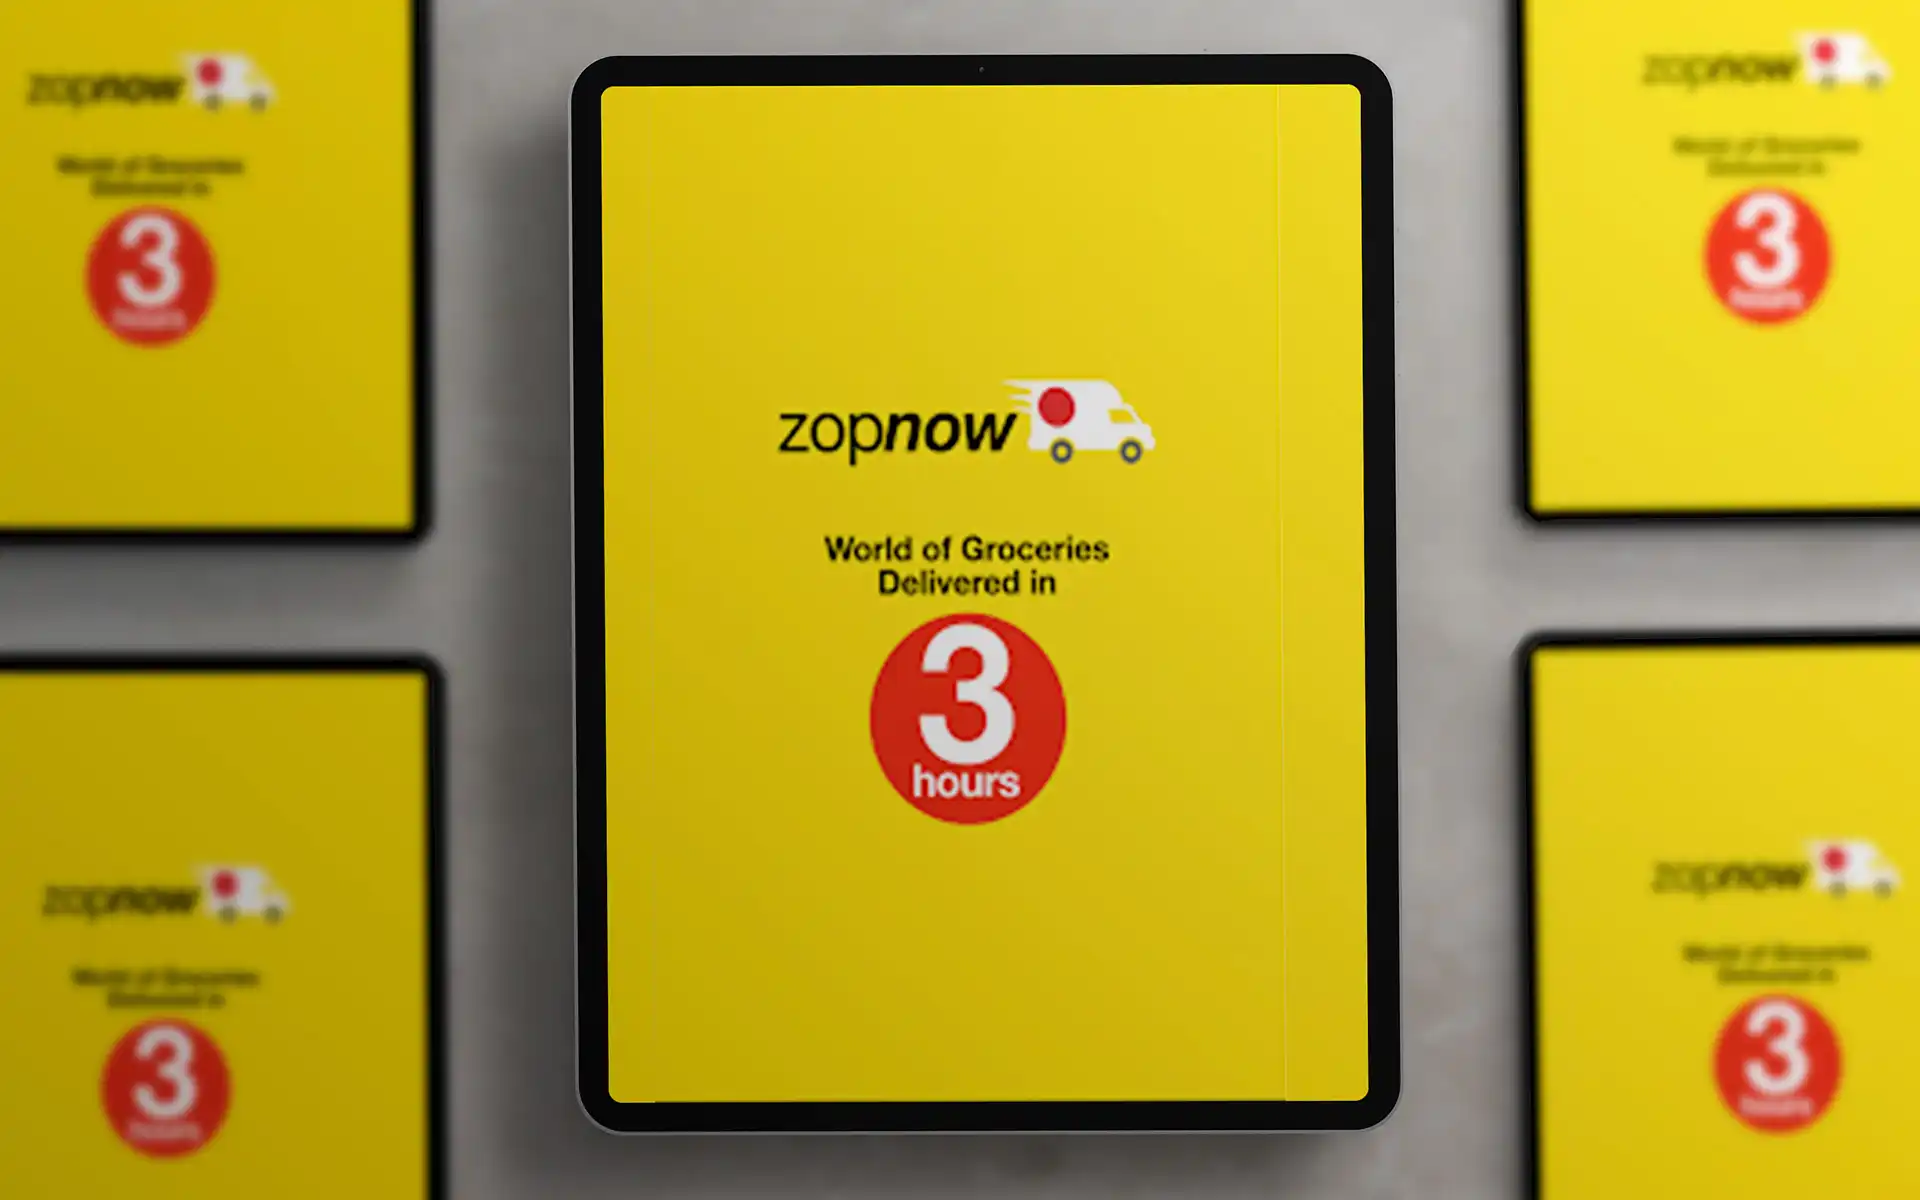 ZopNow Brand Development